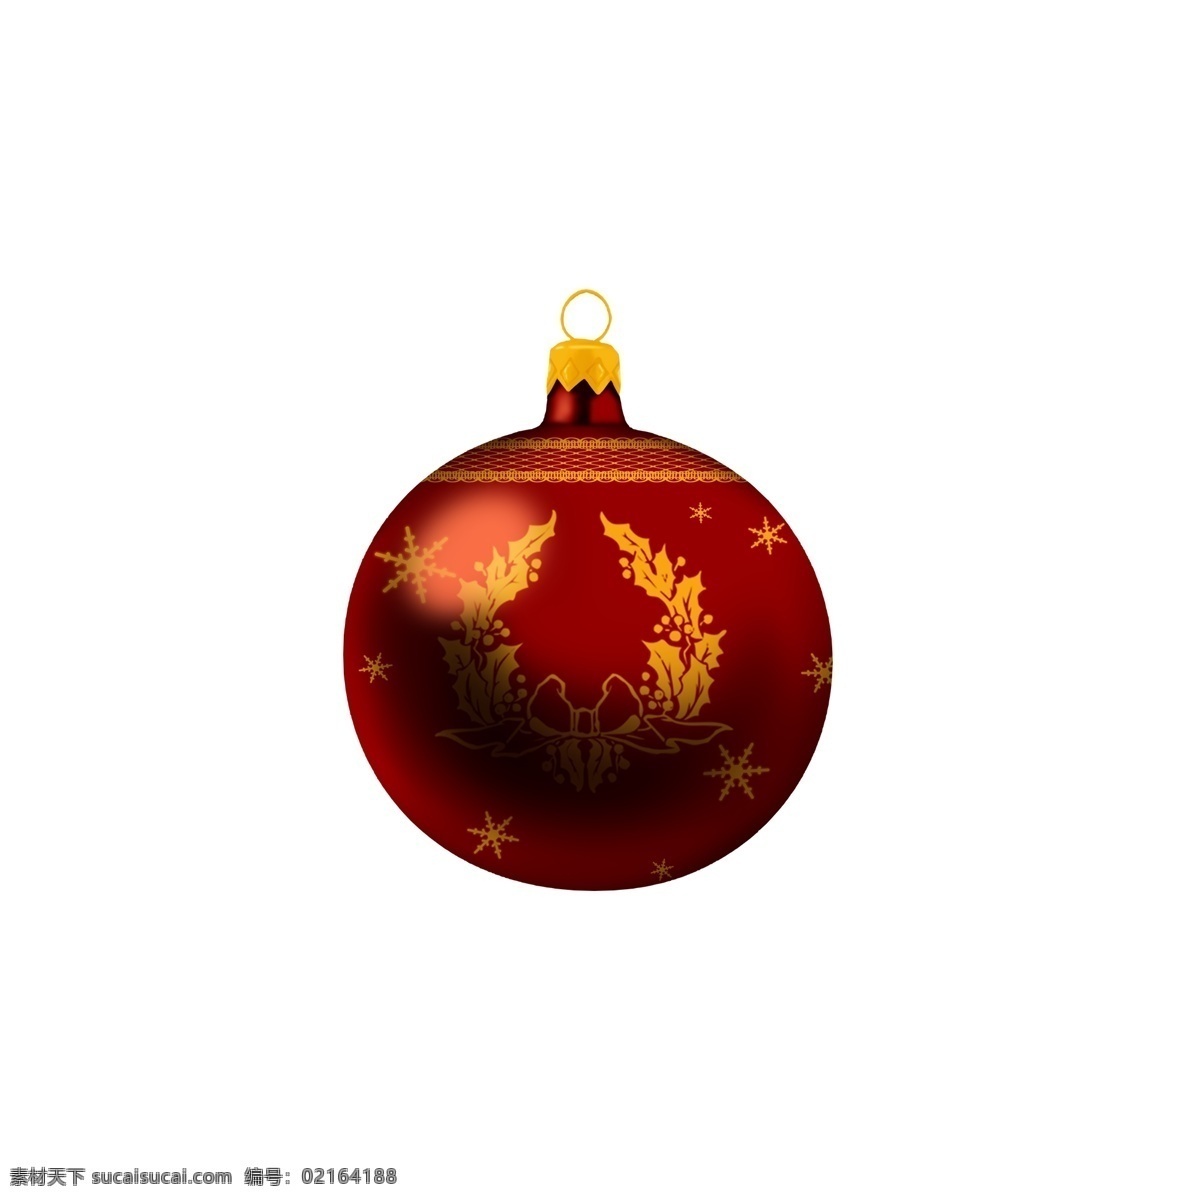 手绘 圣诞 装饰 球 红色 蕾丝 花环 雪花 创意 商用 圣诞节 金色 可爱 手绘风 平安夜 黄色 配图 写实 可商用